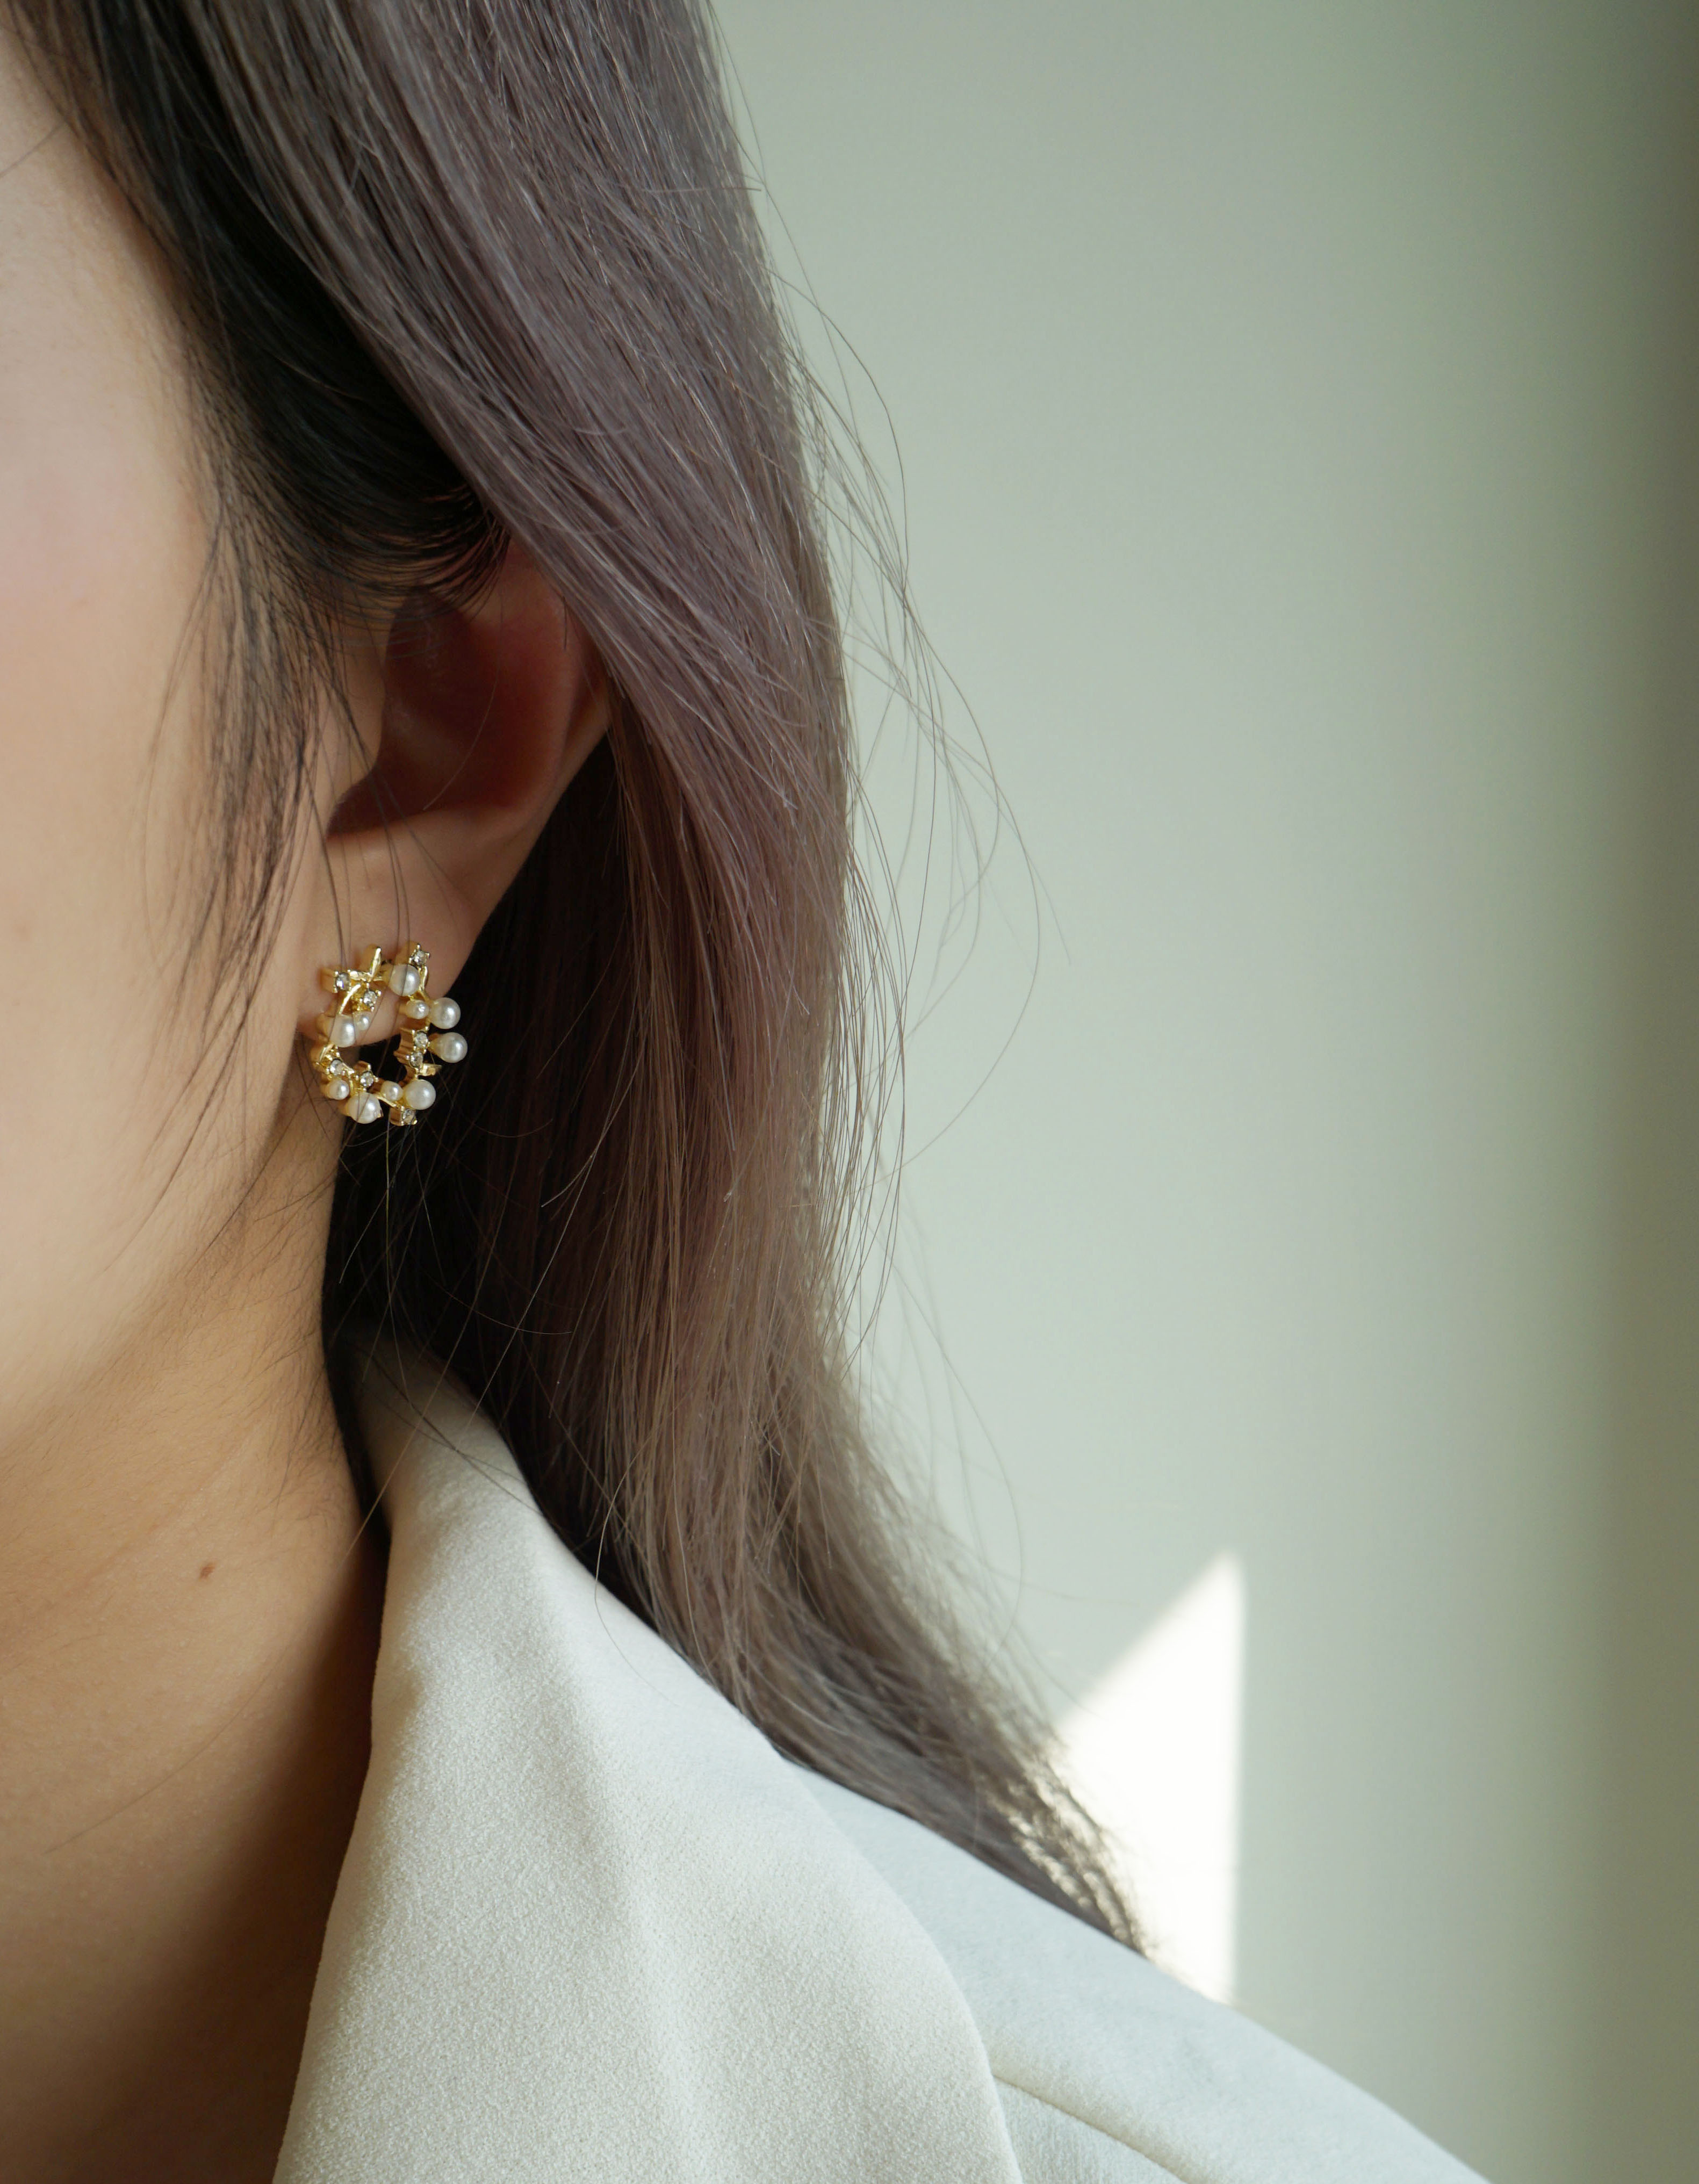 針式 - 金色花圈珍珠耳環 - 輕奓生活x平價飾品 | 迪希雅 deesir 飾品 💍